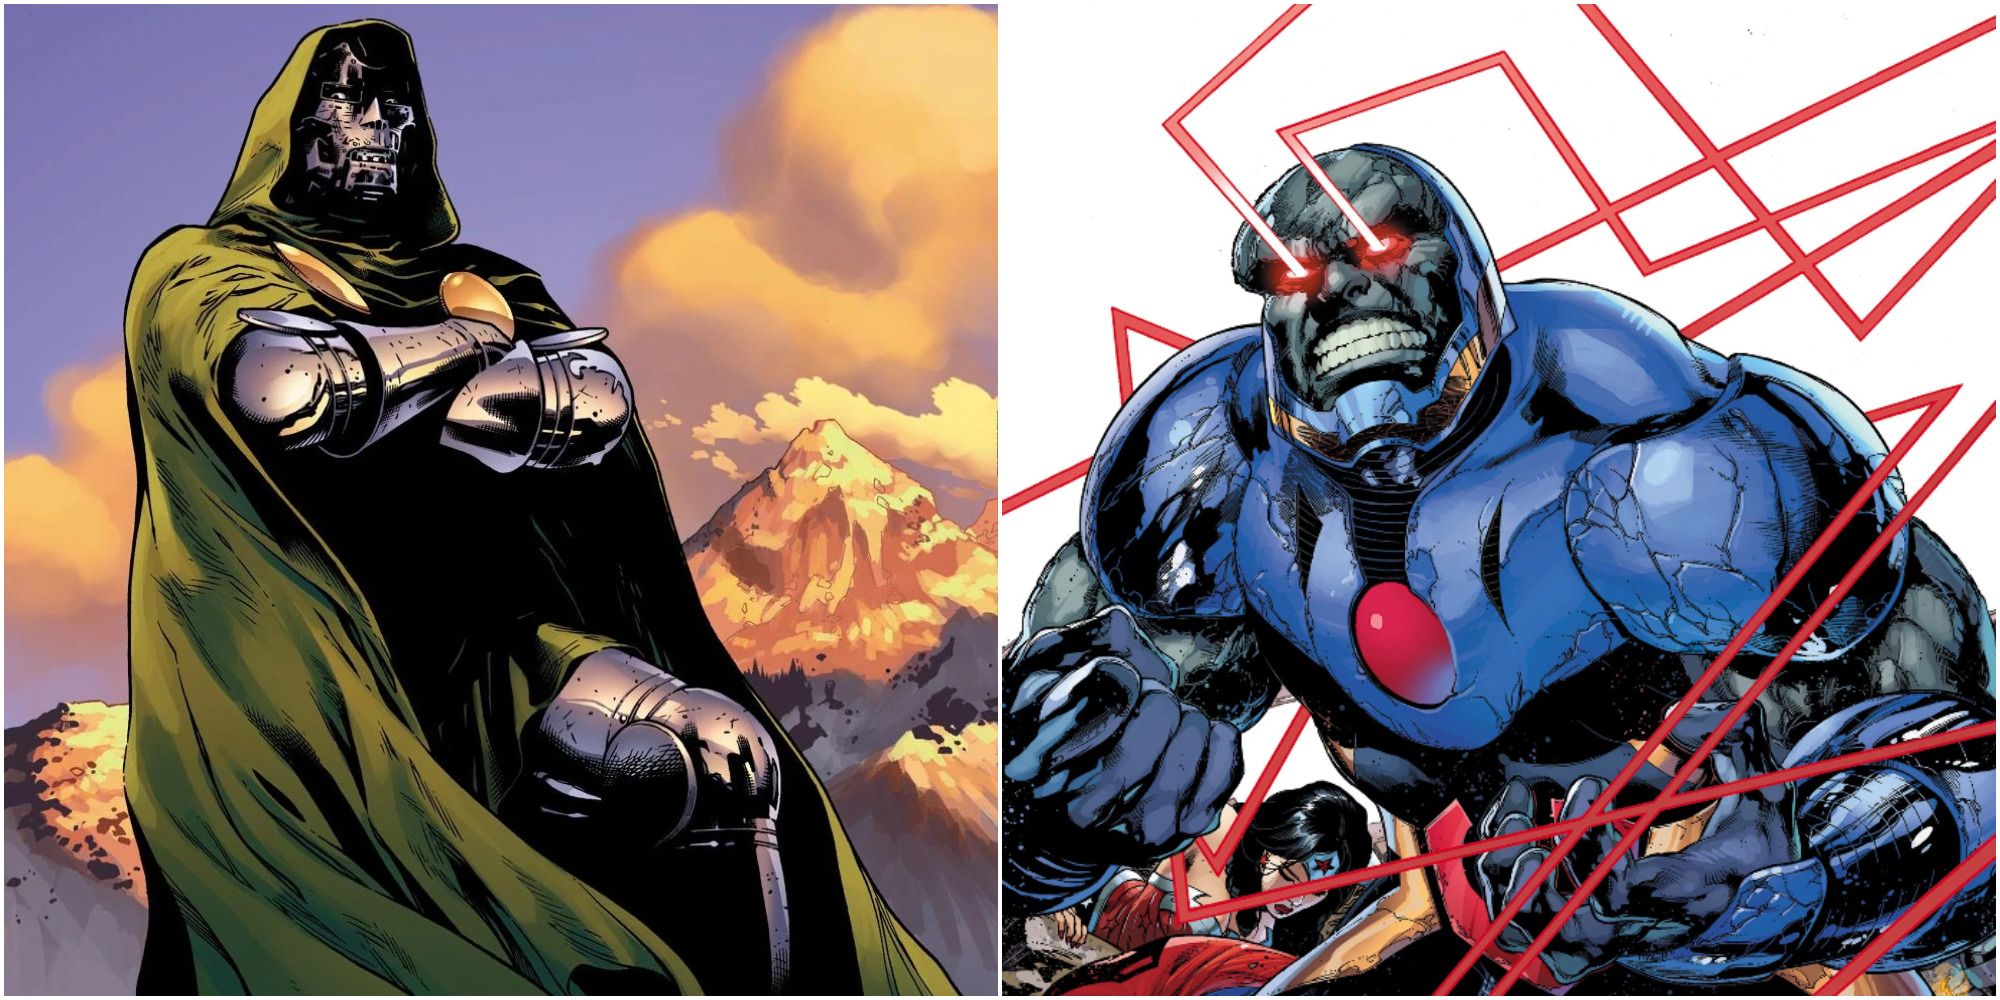 Doctor Doom and Darkseid